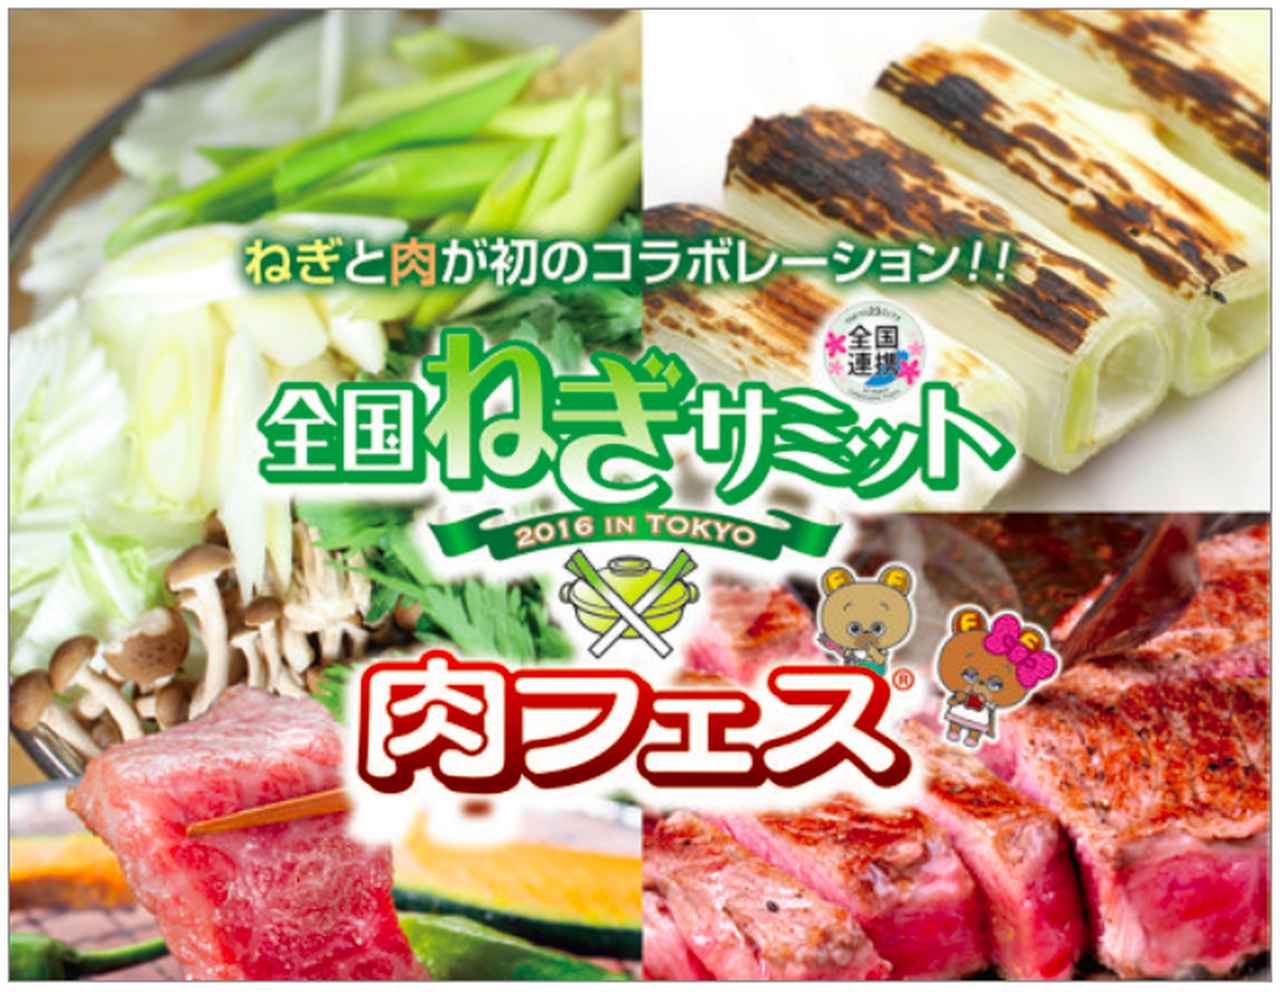 肉フェス 日本全国と世界へ発信する 肉料理特化型フードエンタテインメント